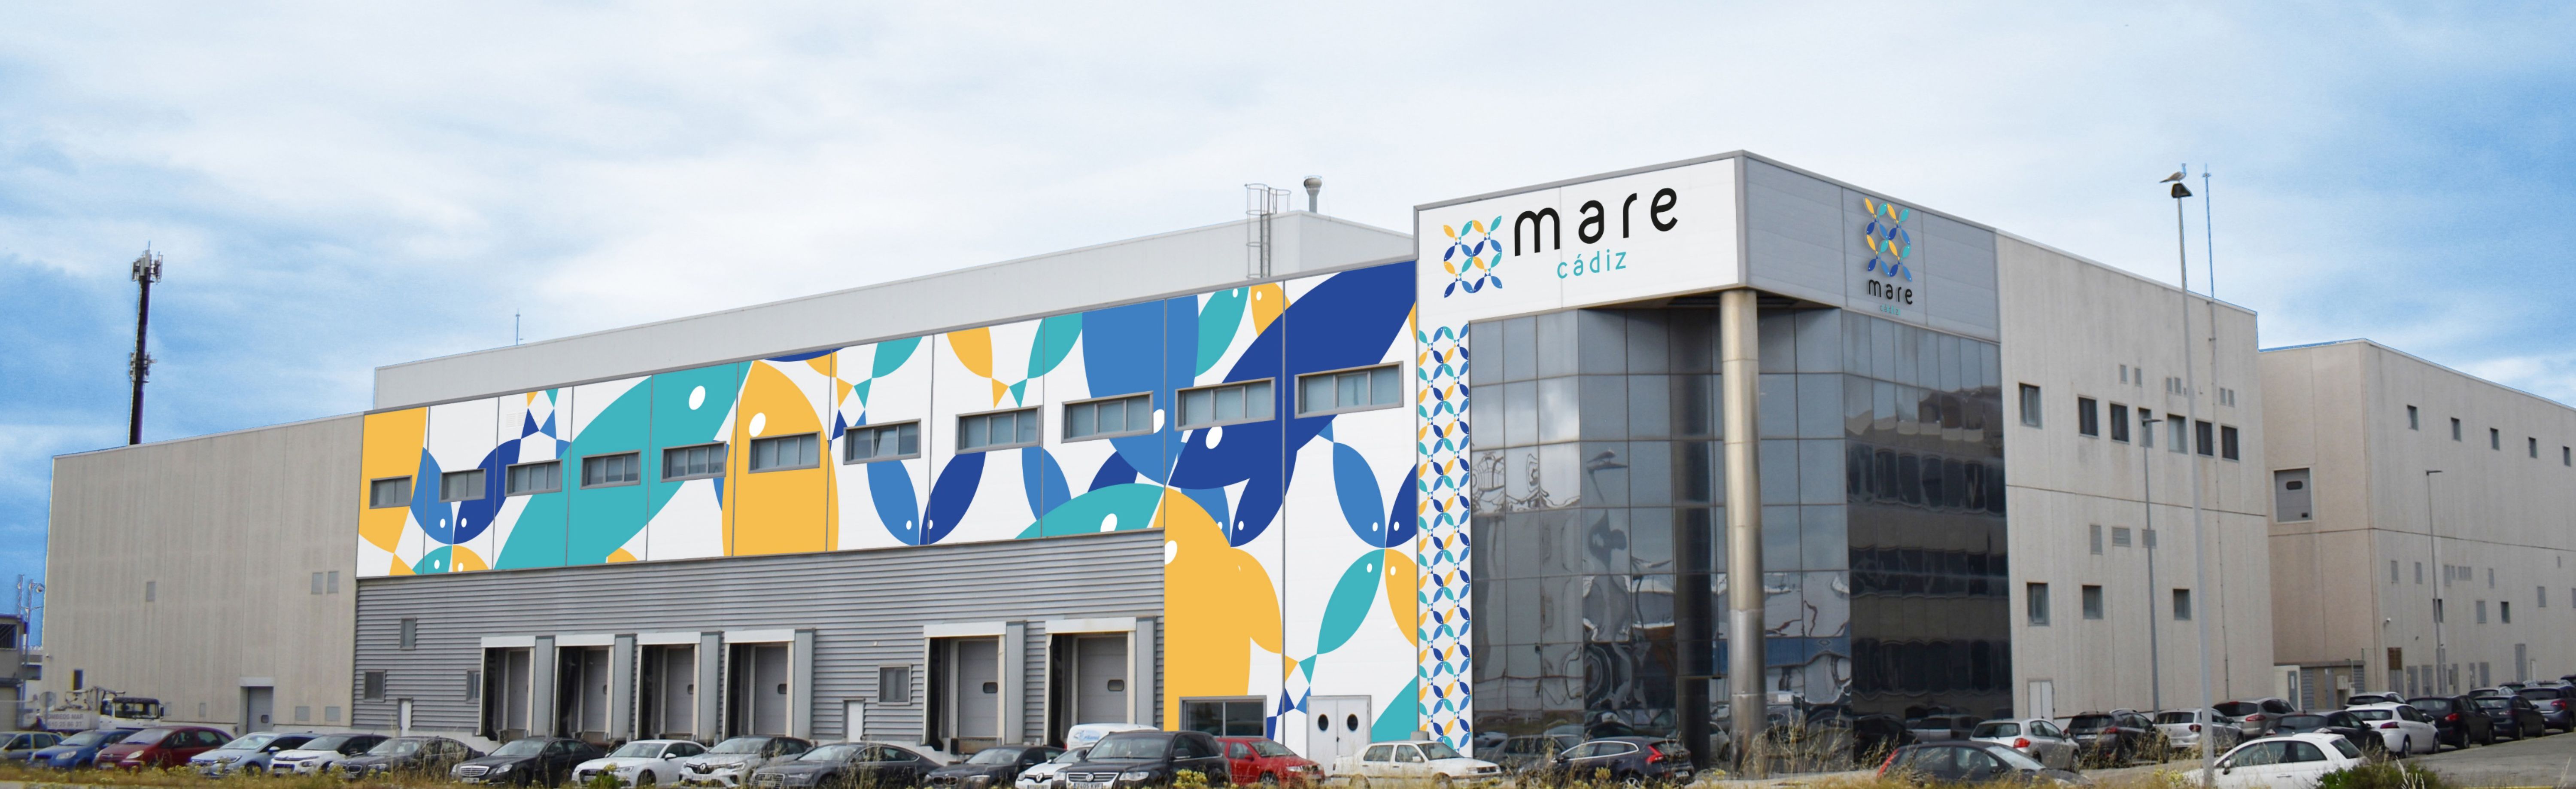 La nueva factoría de productos del mar, Mare Cádiz, que abre en Zona Franca.